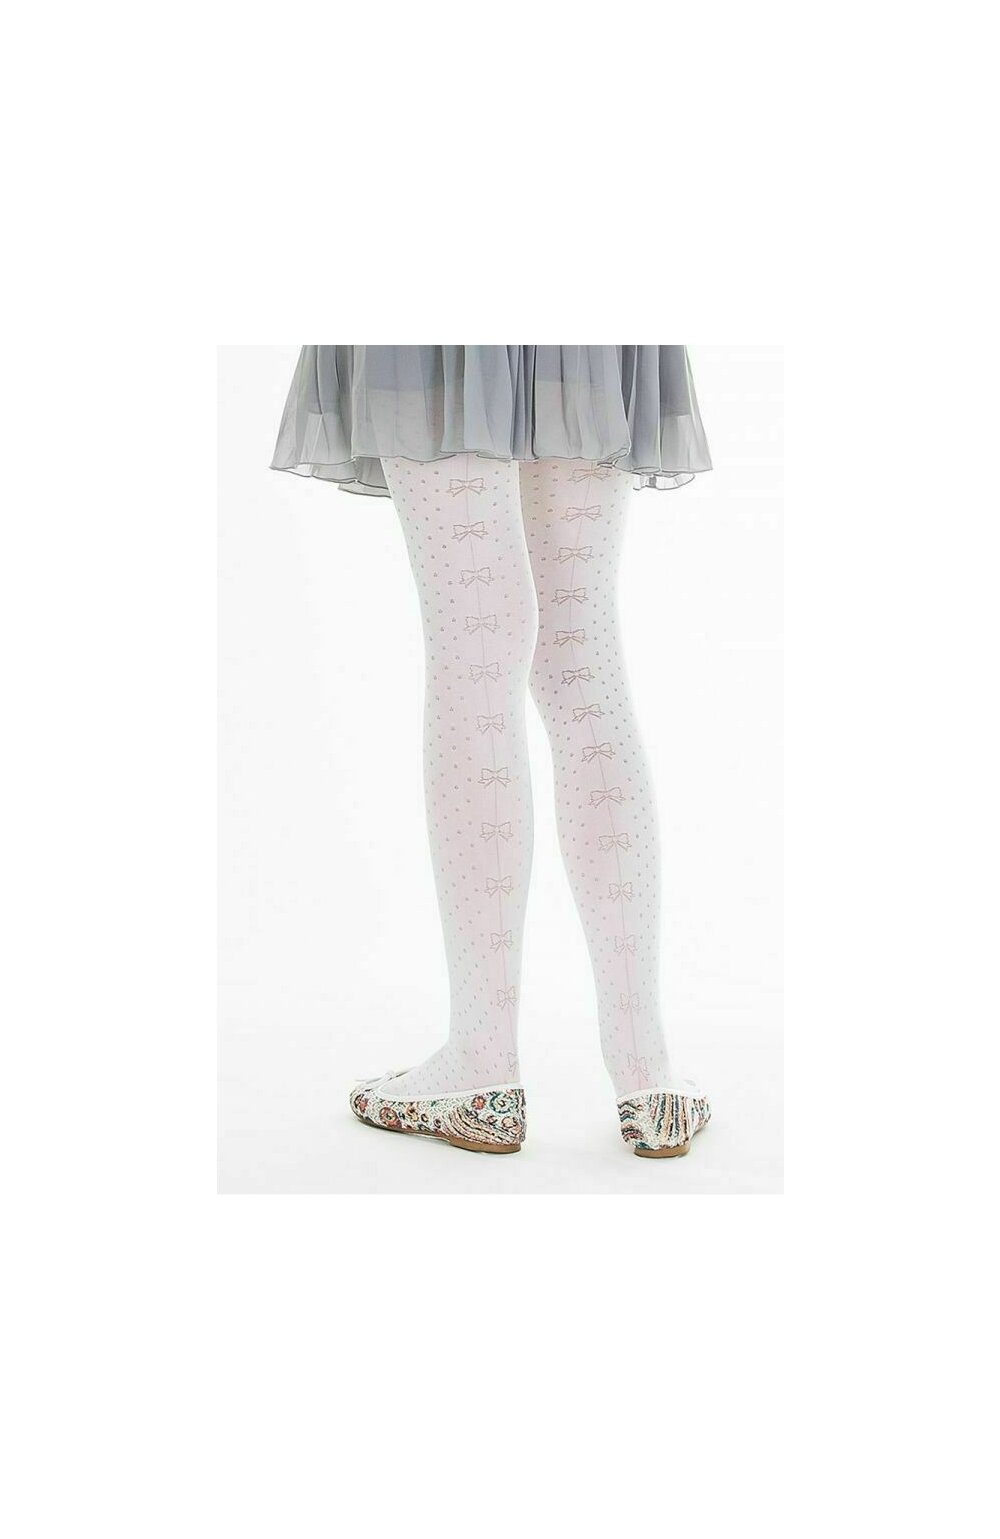 Ciorapi cu model pentru fetite – Marilyn Lily C83, 60 DEN – violet, roz carouri imagine noua 2022